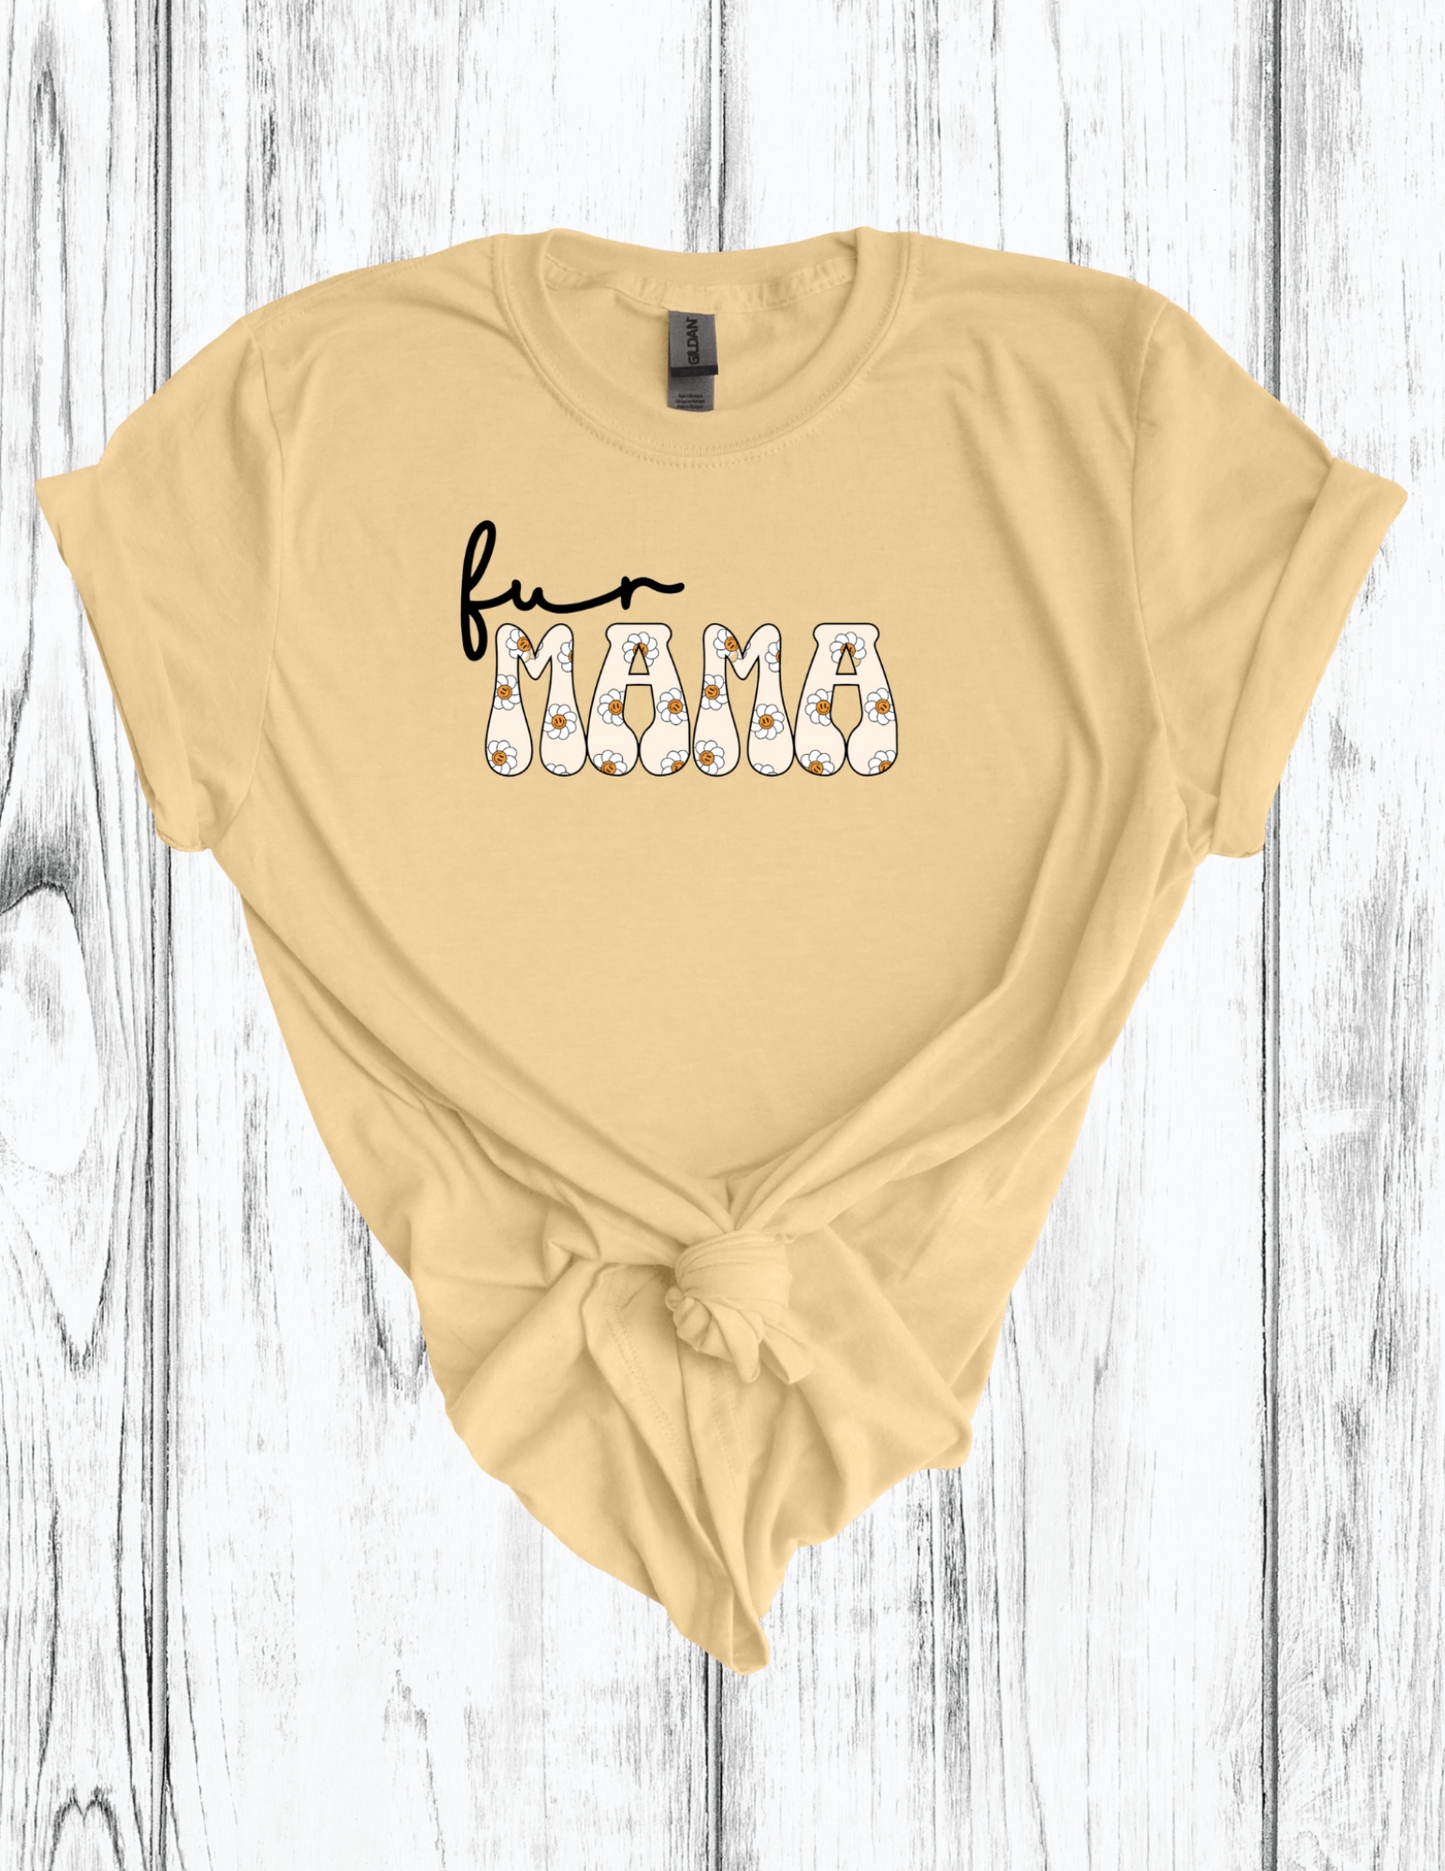 Fur Mama Smiley Retro Flower Print T-Shirt